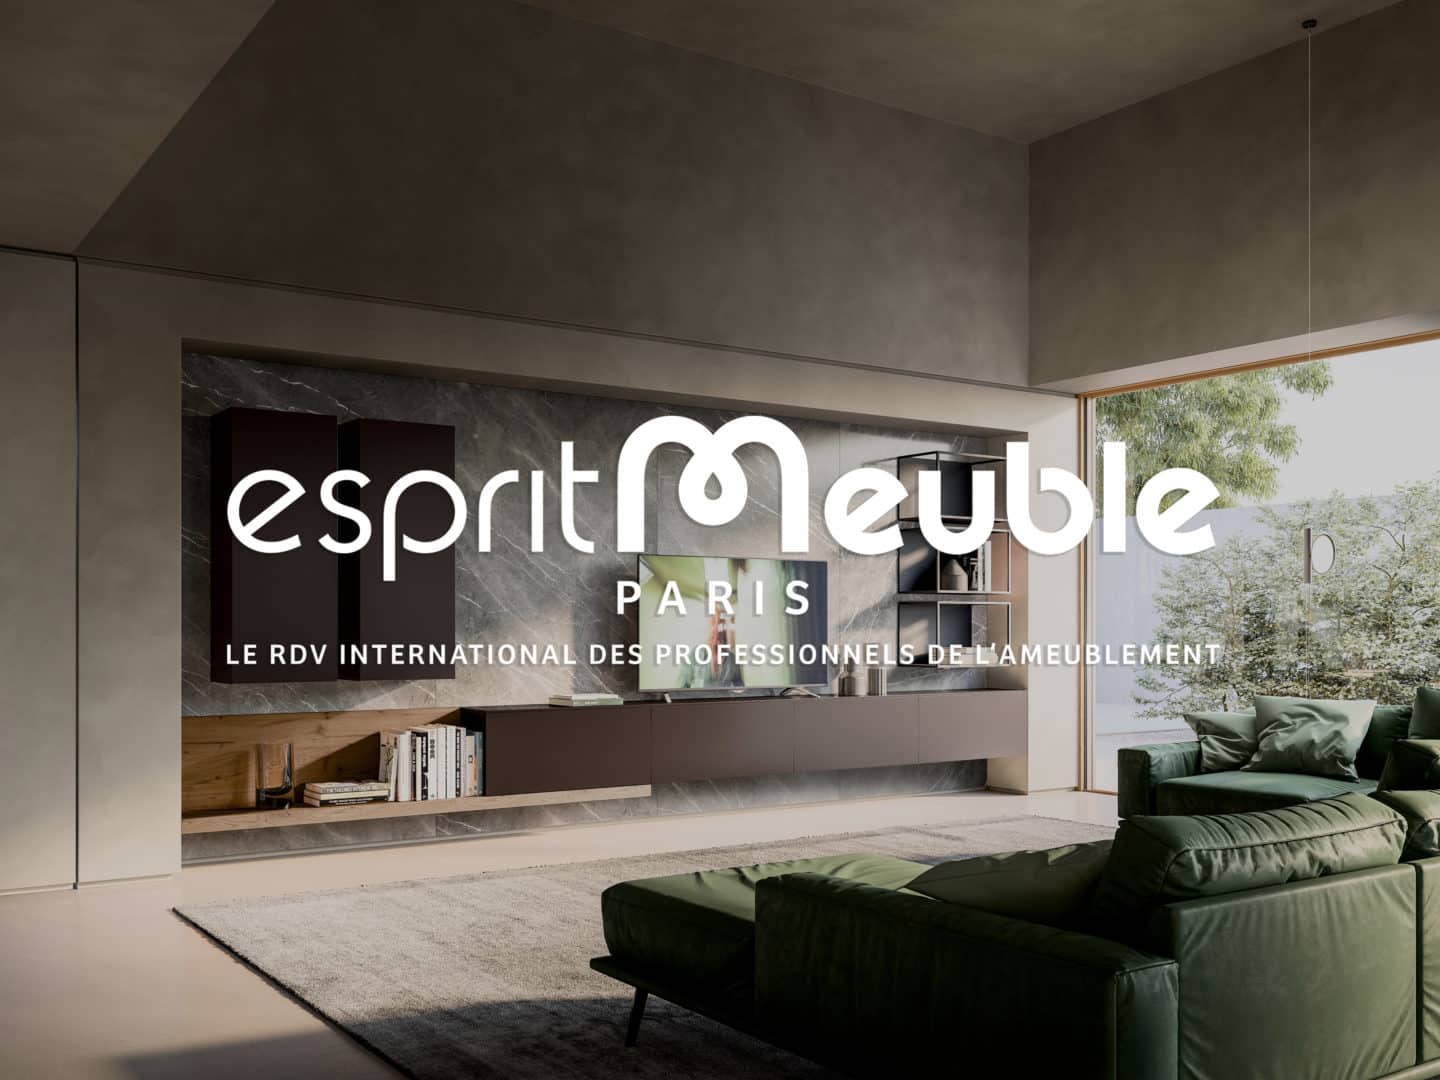 ARMONY Cucine sera présente à Esprit Meuble, le nouveau salon professionnel de la cuisine en France.